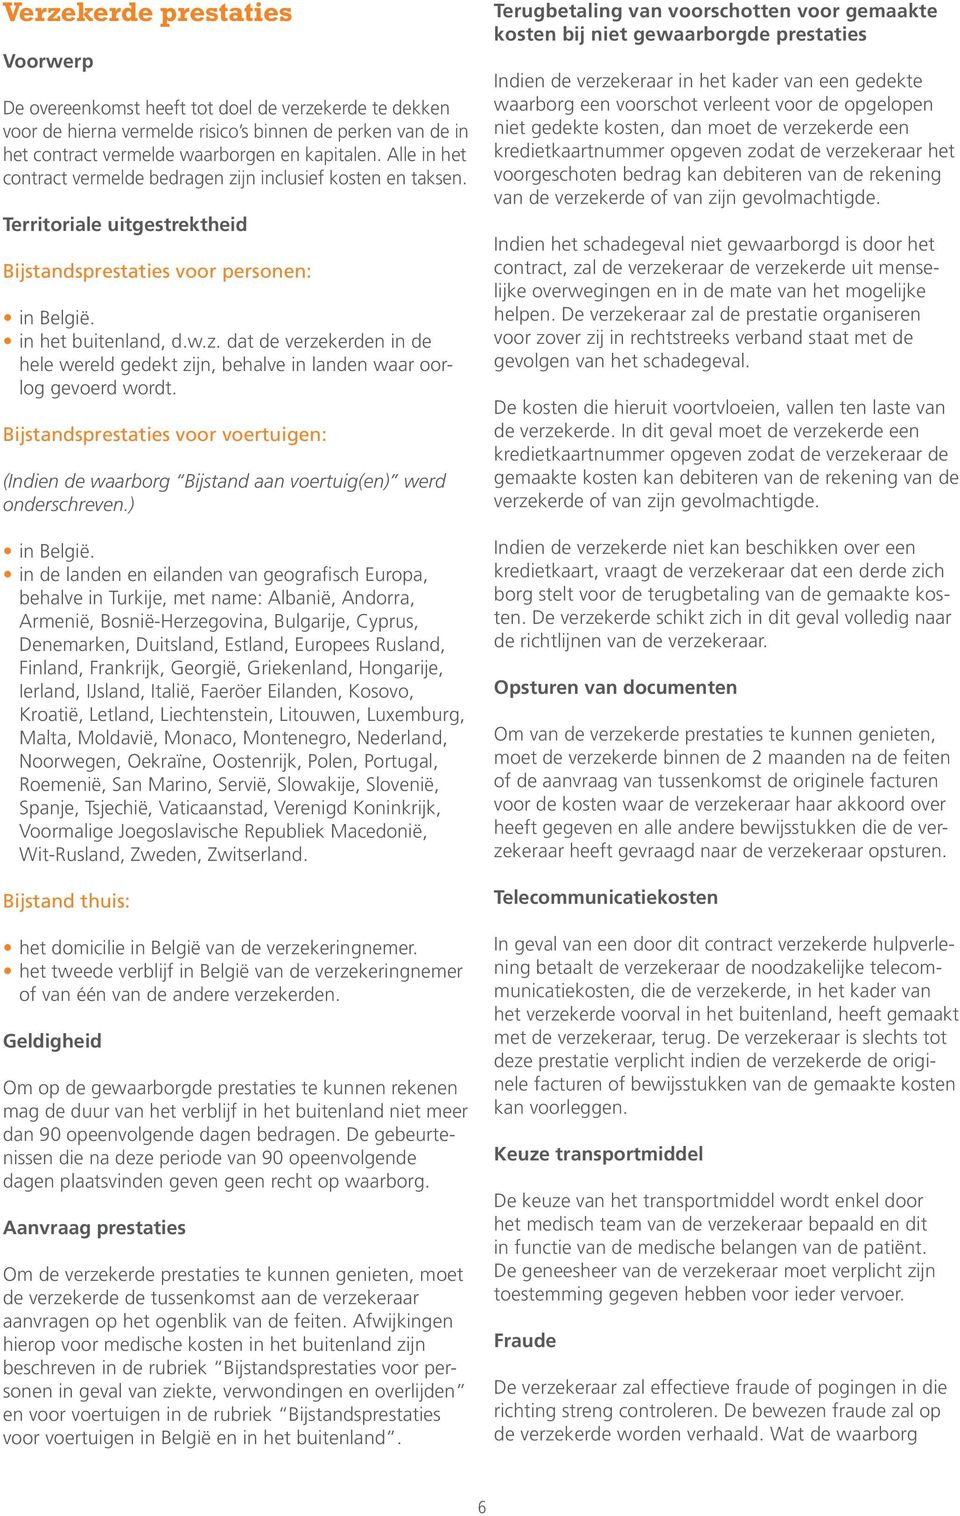 Bijstandsprestaties voor voertuigen: (Indien de waarborg Bijstand aan voertuig(en) werd onderschreven.) in België.